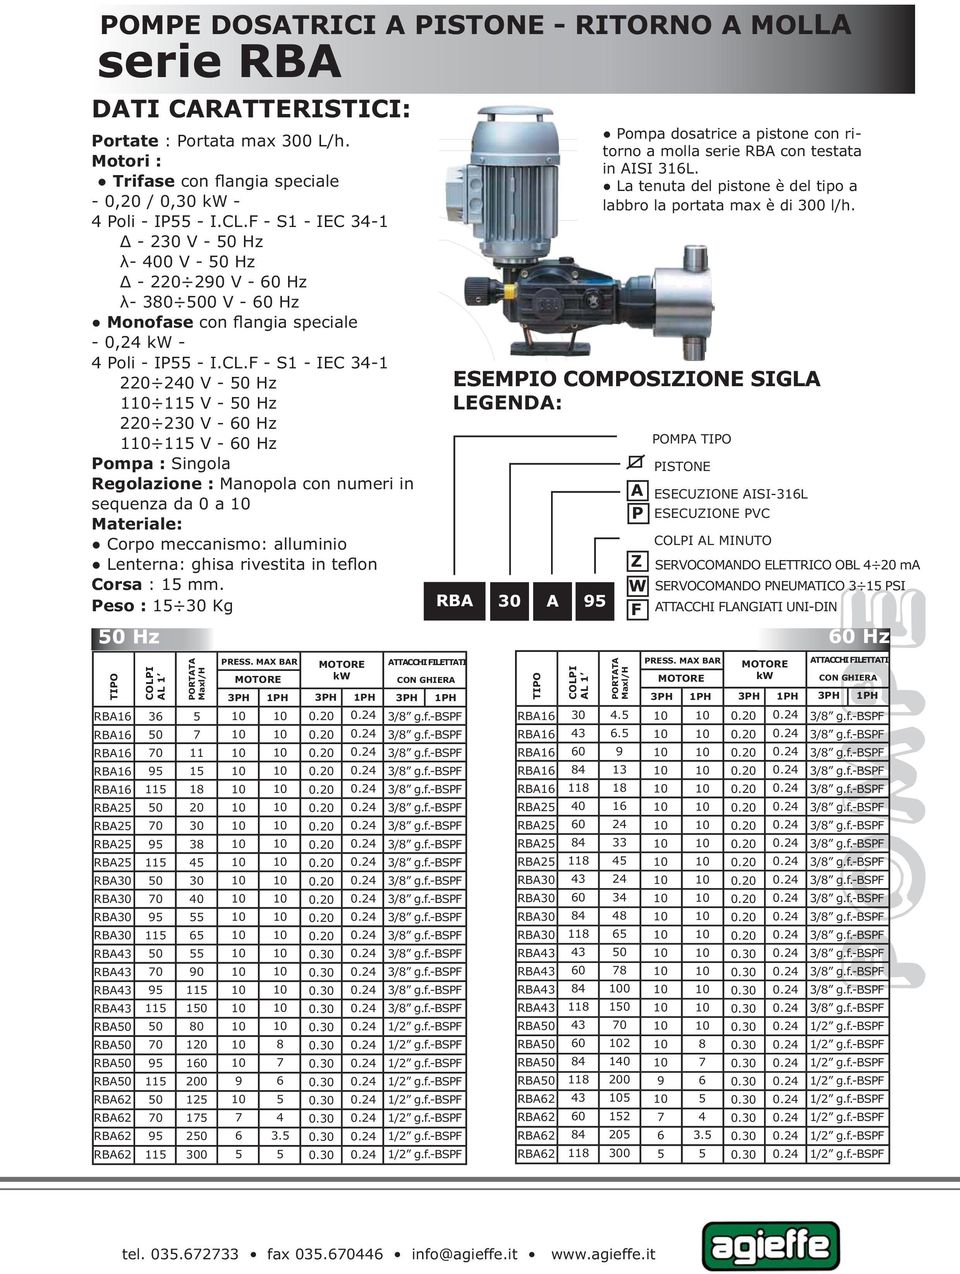 F - S1 - IEC 34-1 220 240 V - Hz 1 11 V - Hz 220 230 V - Hz 1 11 V - Hz Pompa : Singola Regolazione : Manopola con numeri in sequenza da 0 a Materiale: Corpo meccanismo: alluminio Lenterna: ghisa